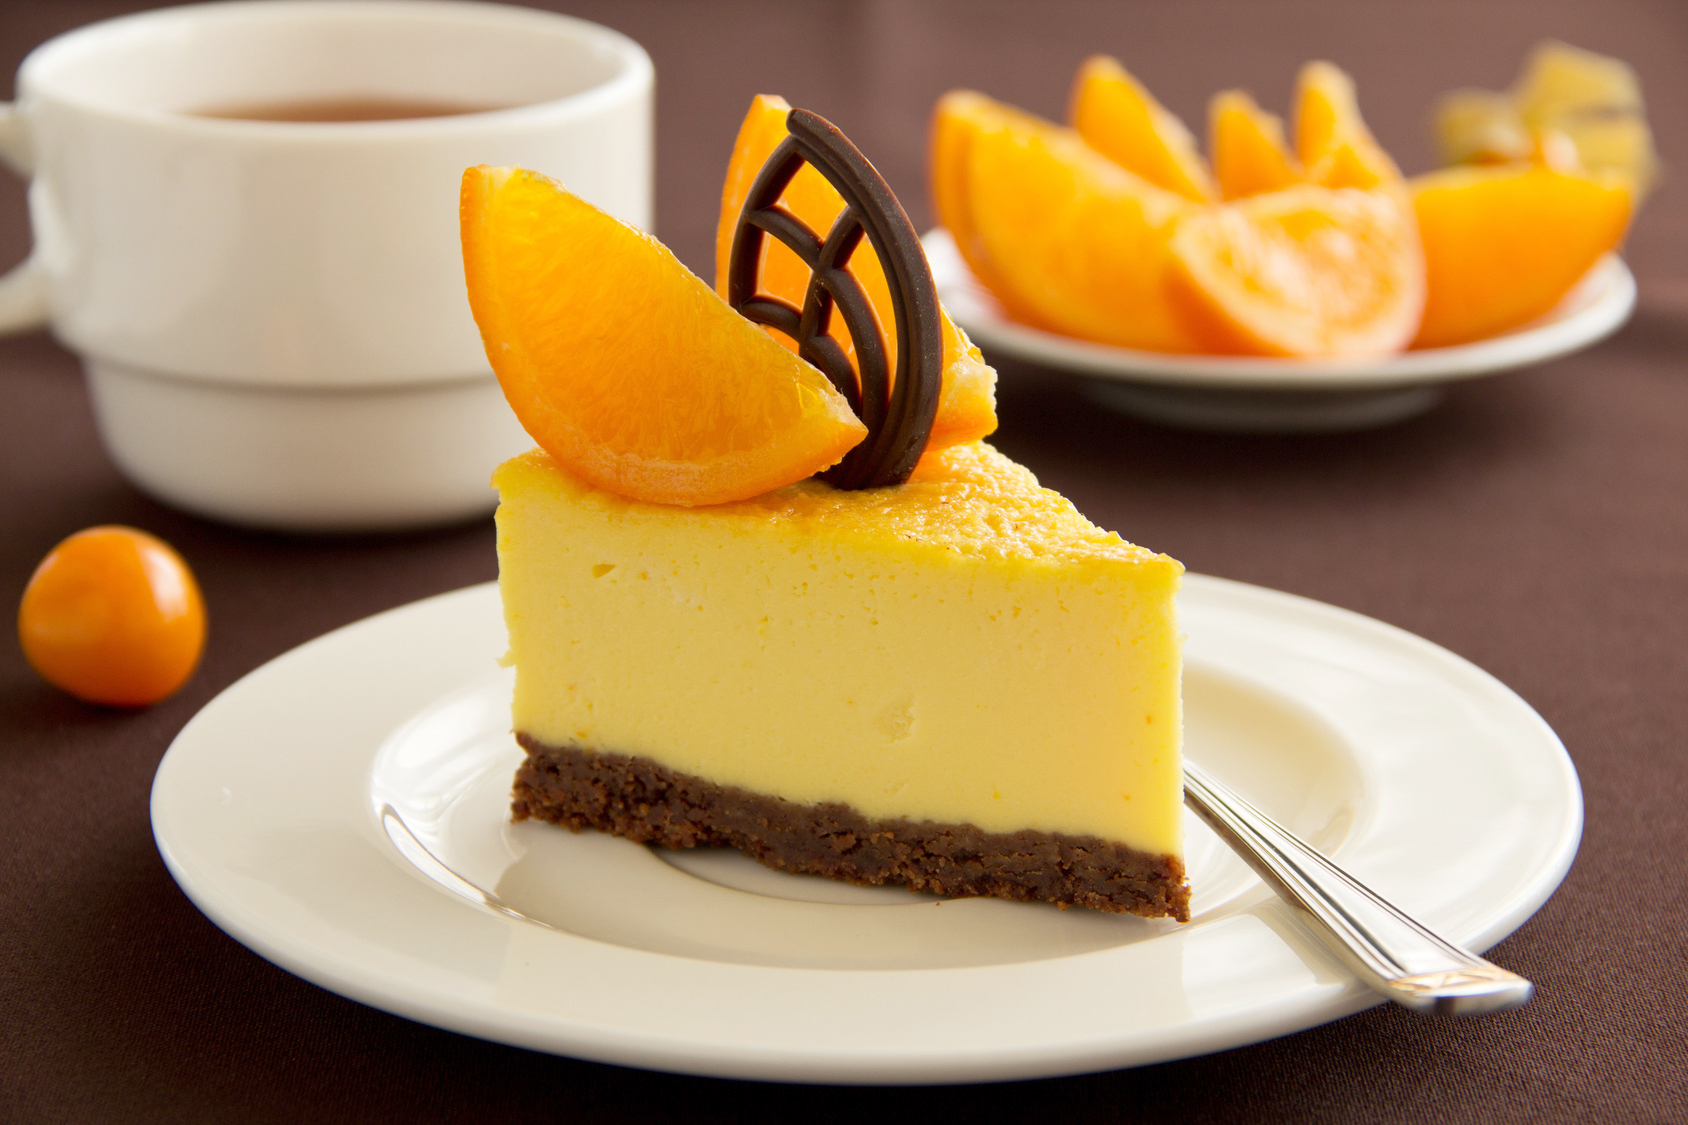 Lire la suite à propos de l’article Cheese cake chocolat orange